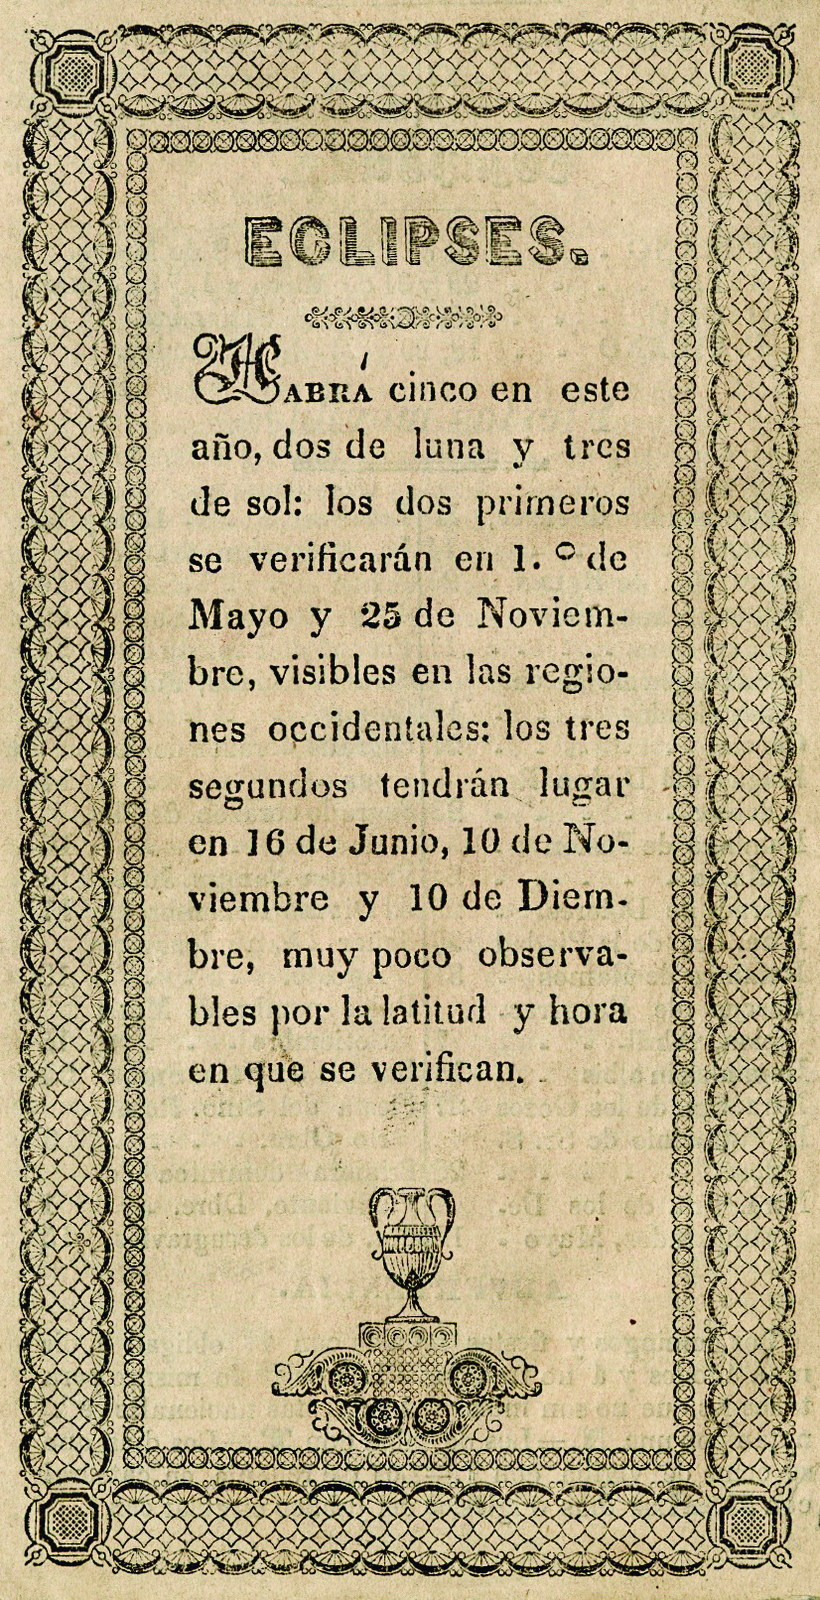 Tercer calendario portatil, de Juan N. del Valle, arreglado al meridiano de Puebla para el año bisiesto de 1844.